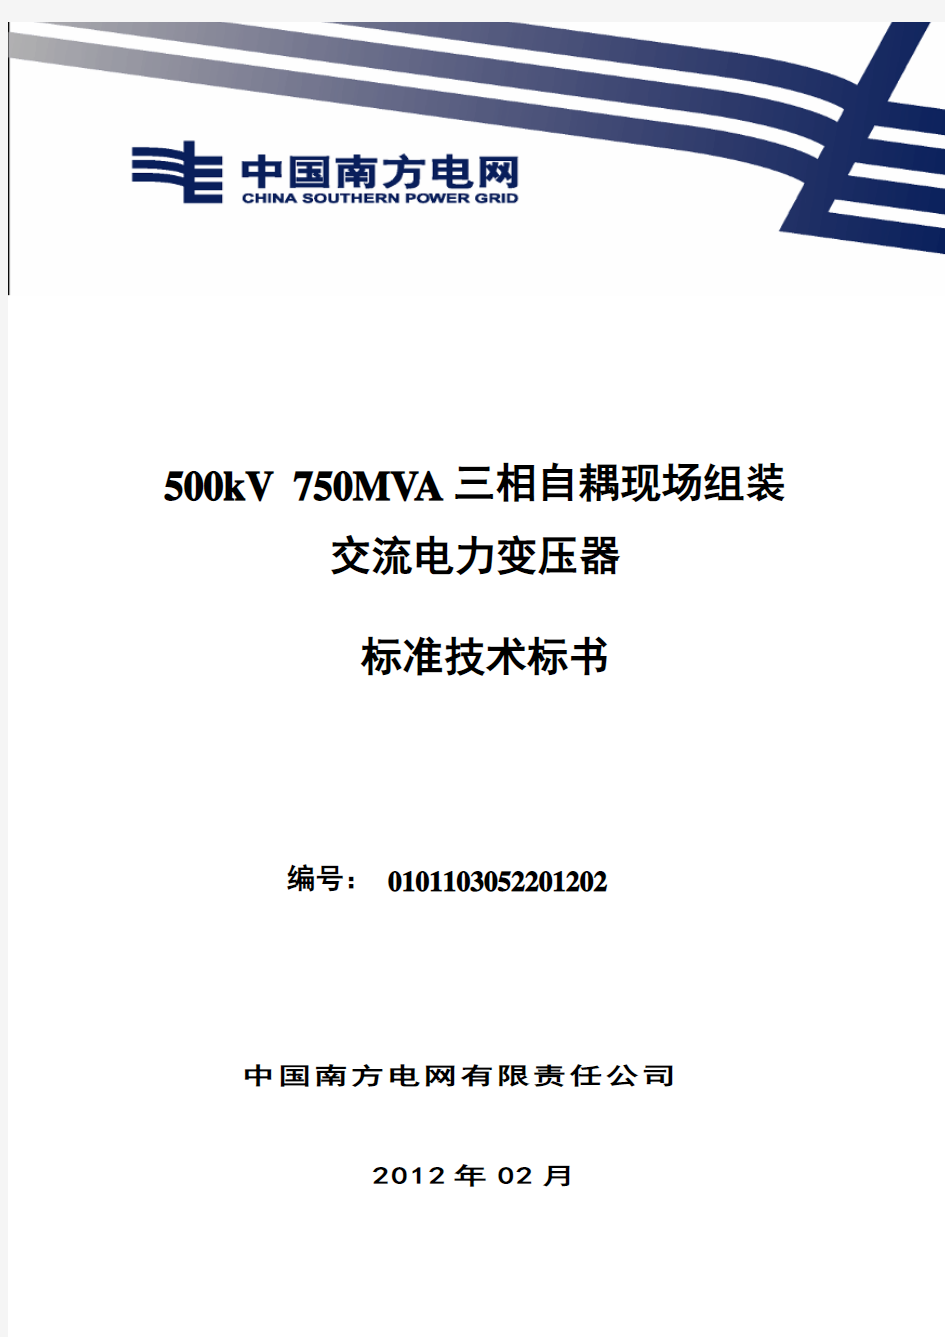 南方电网设备标准技术标书-500kV 750MVA三相自耦现场组装电力变压器(2012版)